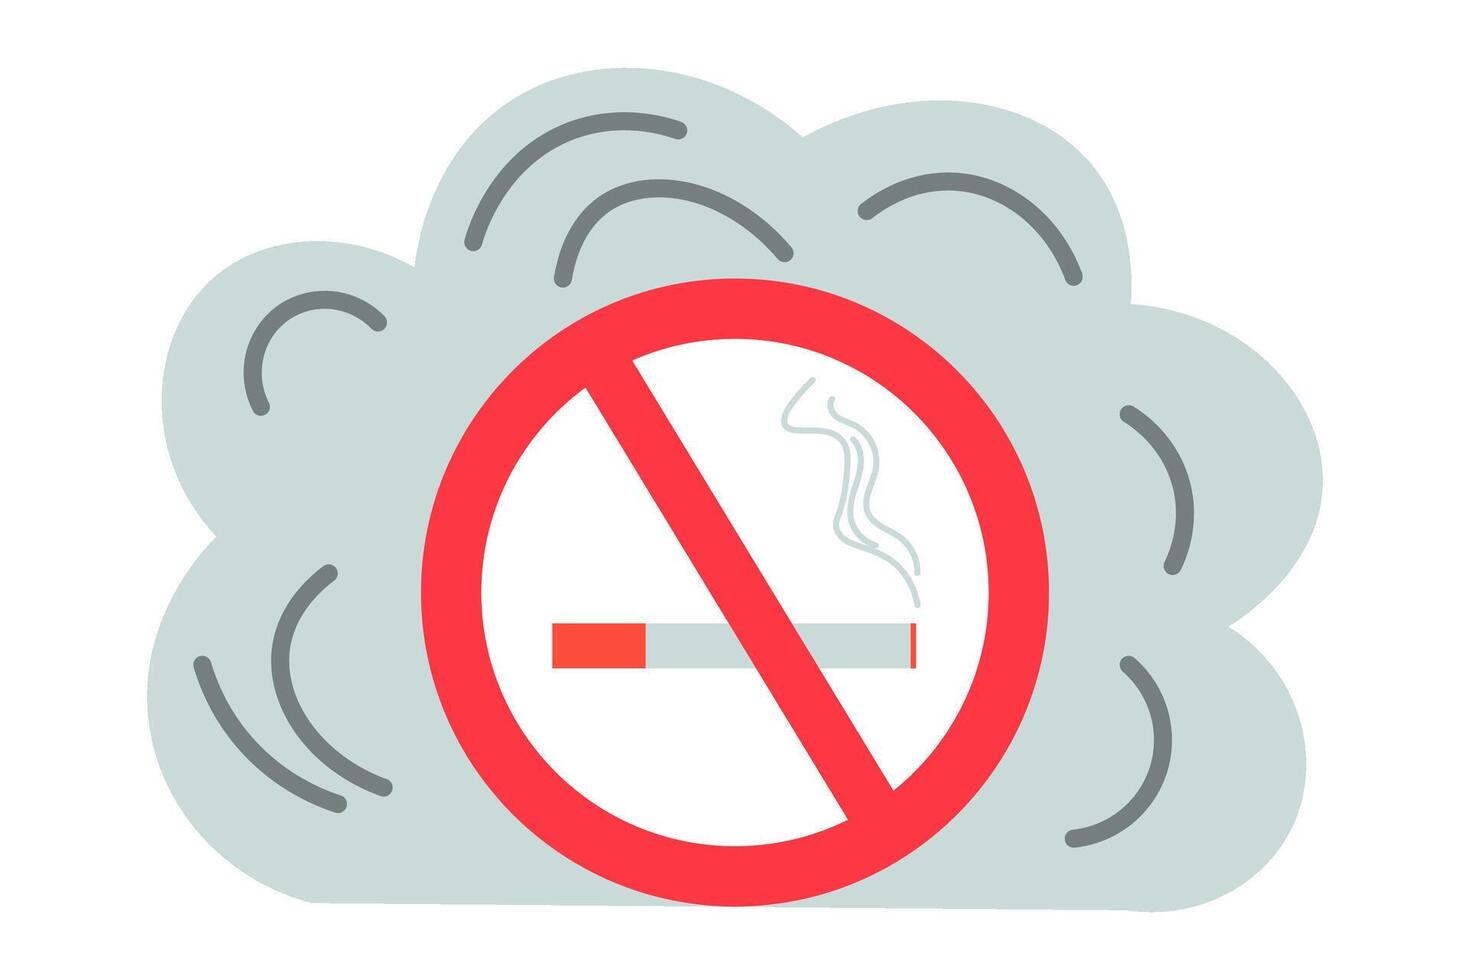 sluta rökning. Nej rökning tecken och en grå moln av rök. vektor illustration.